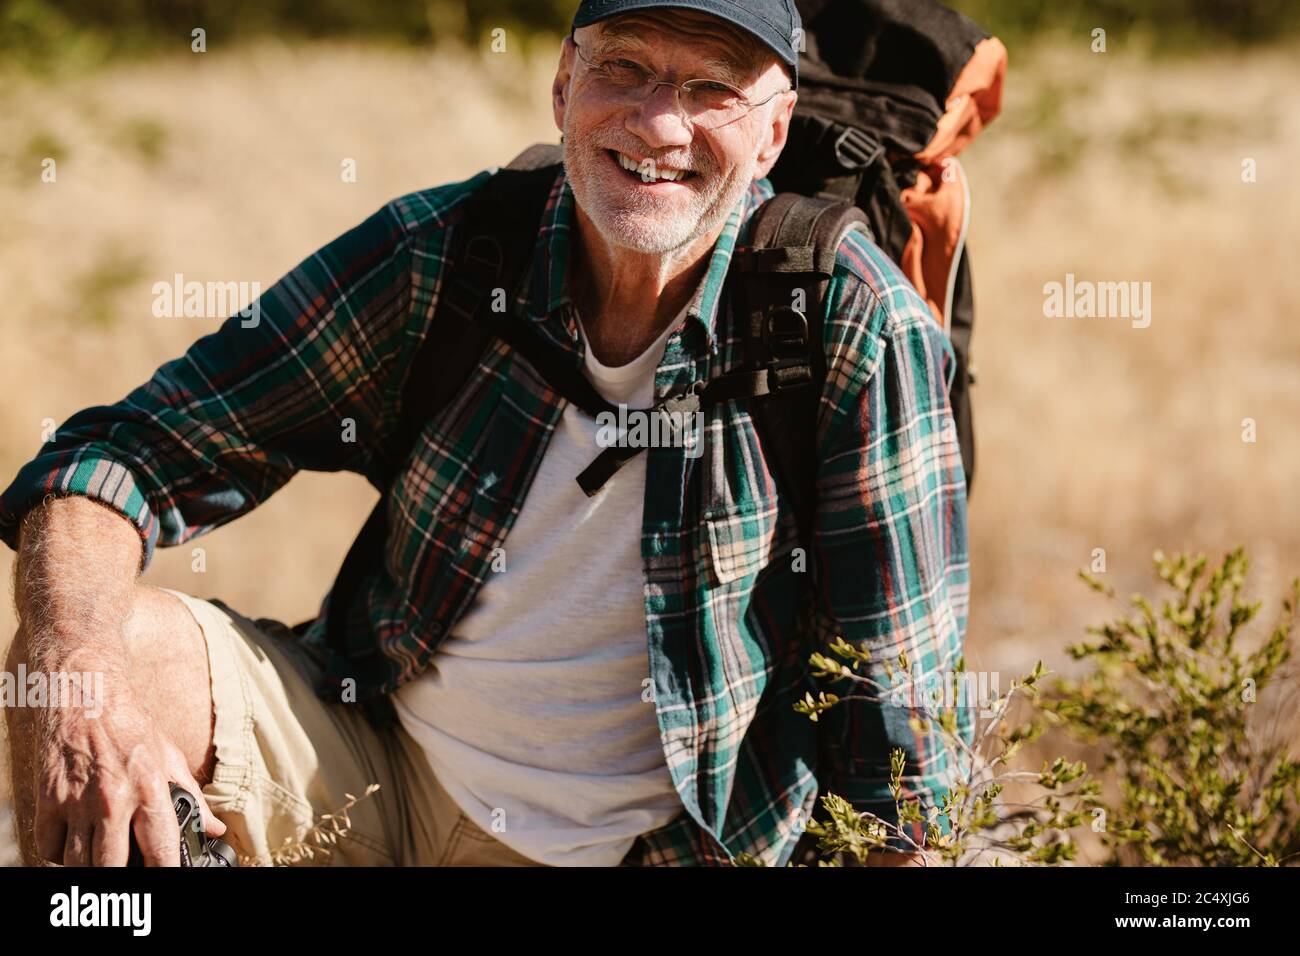 Porträt eines älteren Mannes, der einen Rucksack trägt und die Kamera anschaut und lächelt. Pensionierter männlicher Wanderer, der eine Pause macht, auf dem Boden sitzend. Stockfoto